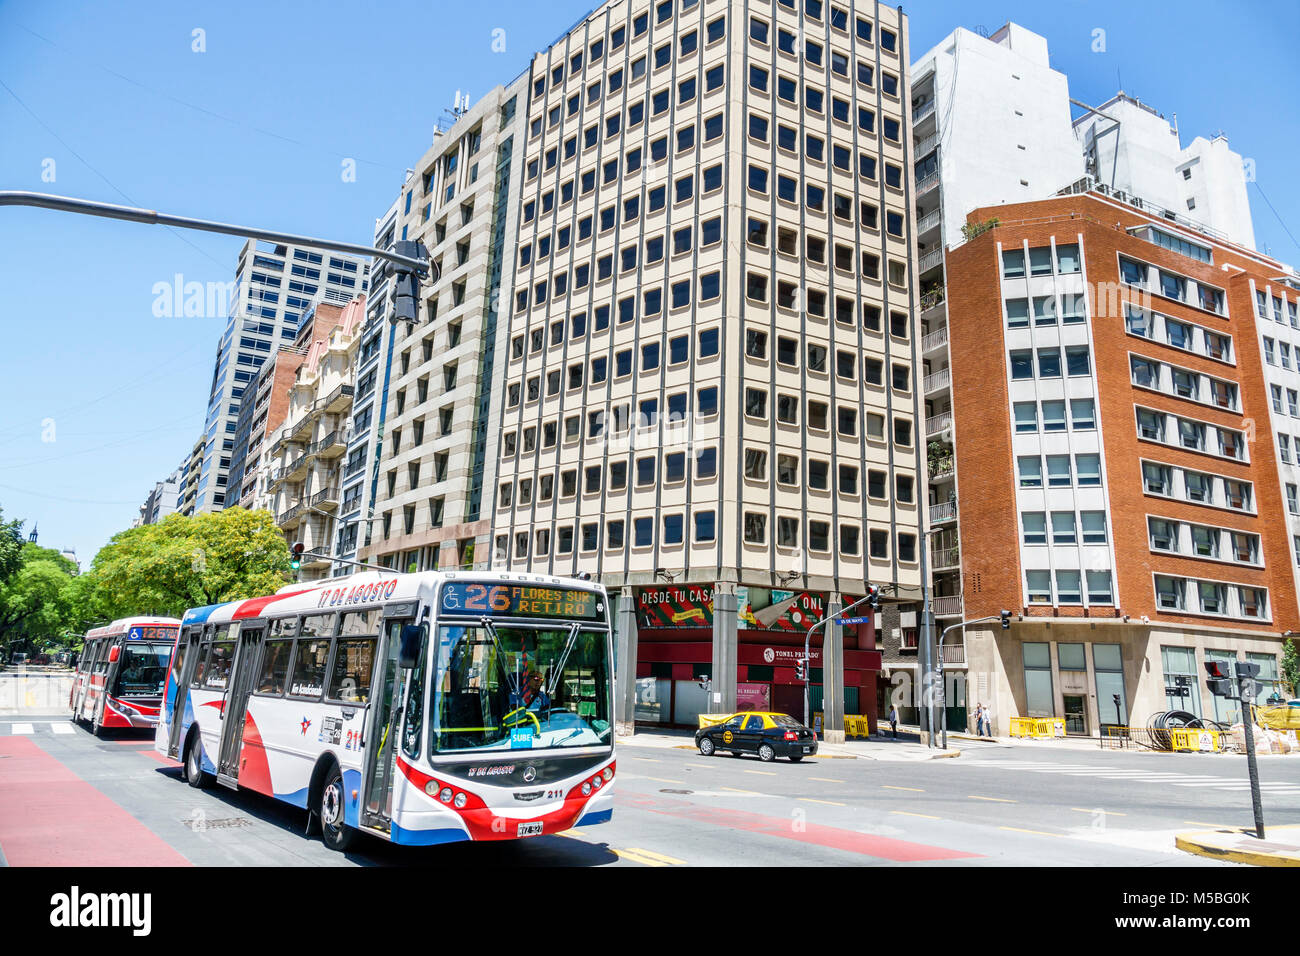 Buenos Aires Argentina, Avenida Leandro N. Alem, strada, traffico, autobus, edifici, skyline della città, ARG171128022 Foto Stock